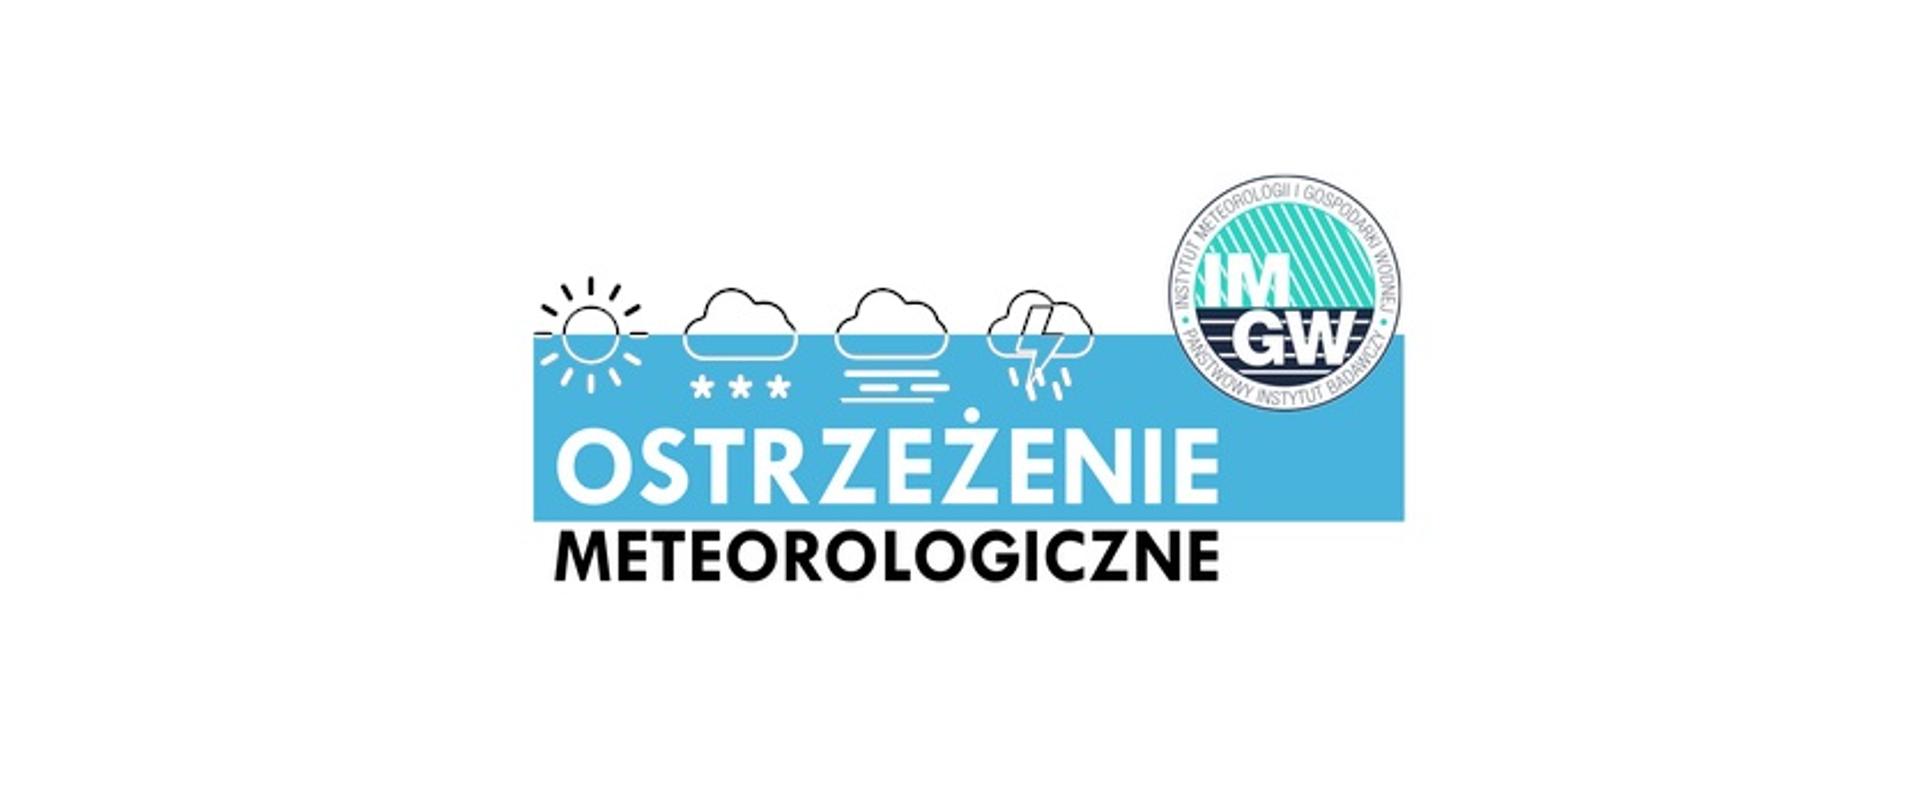 Zdjęcie przedstawia napis: ostrzeżenie meteorologiczne oraz logo Instytutu Meteorologii i Gospodarki Wodnej Państwowy Instytut Badawczy